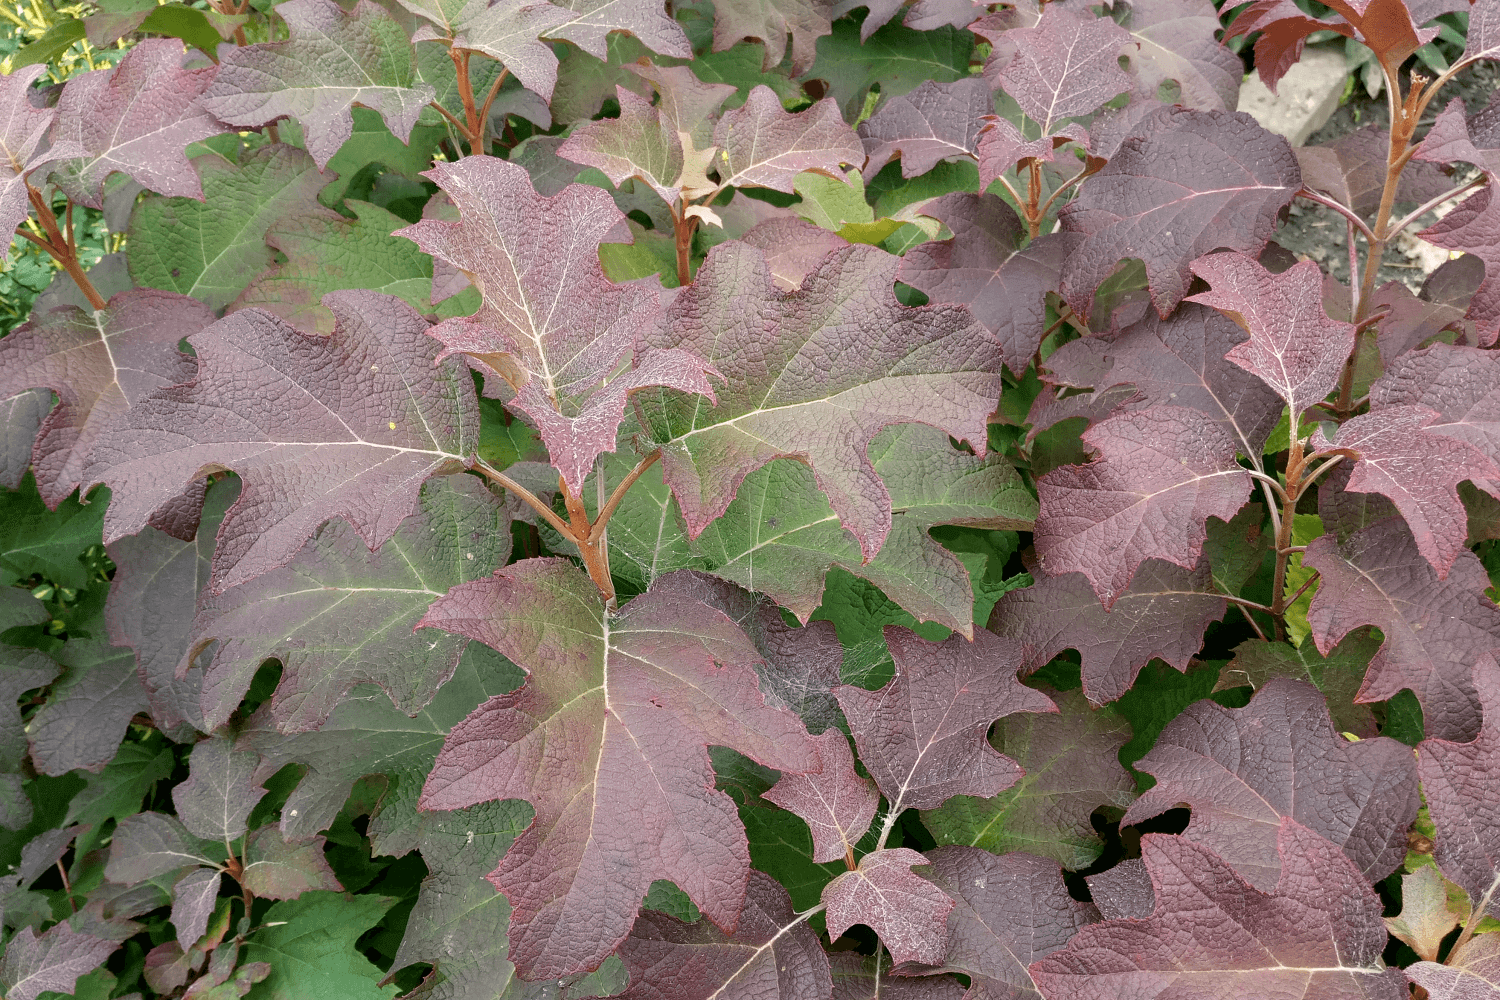 Гортензия дуболистная "Бургундия" в сентябре (Hydrangea quercifolia "Burgundy")